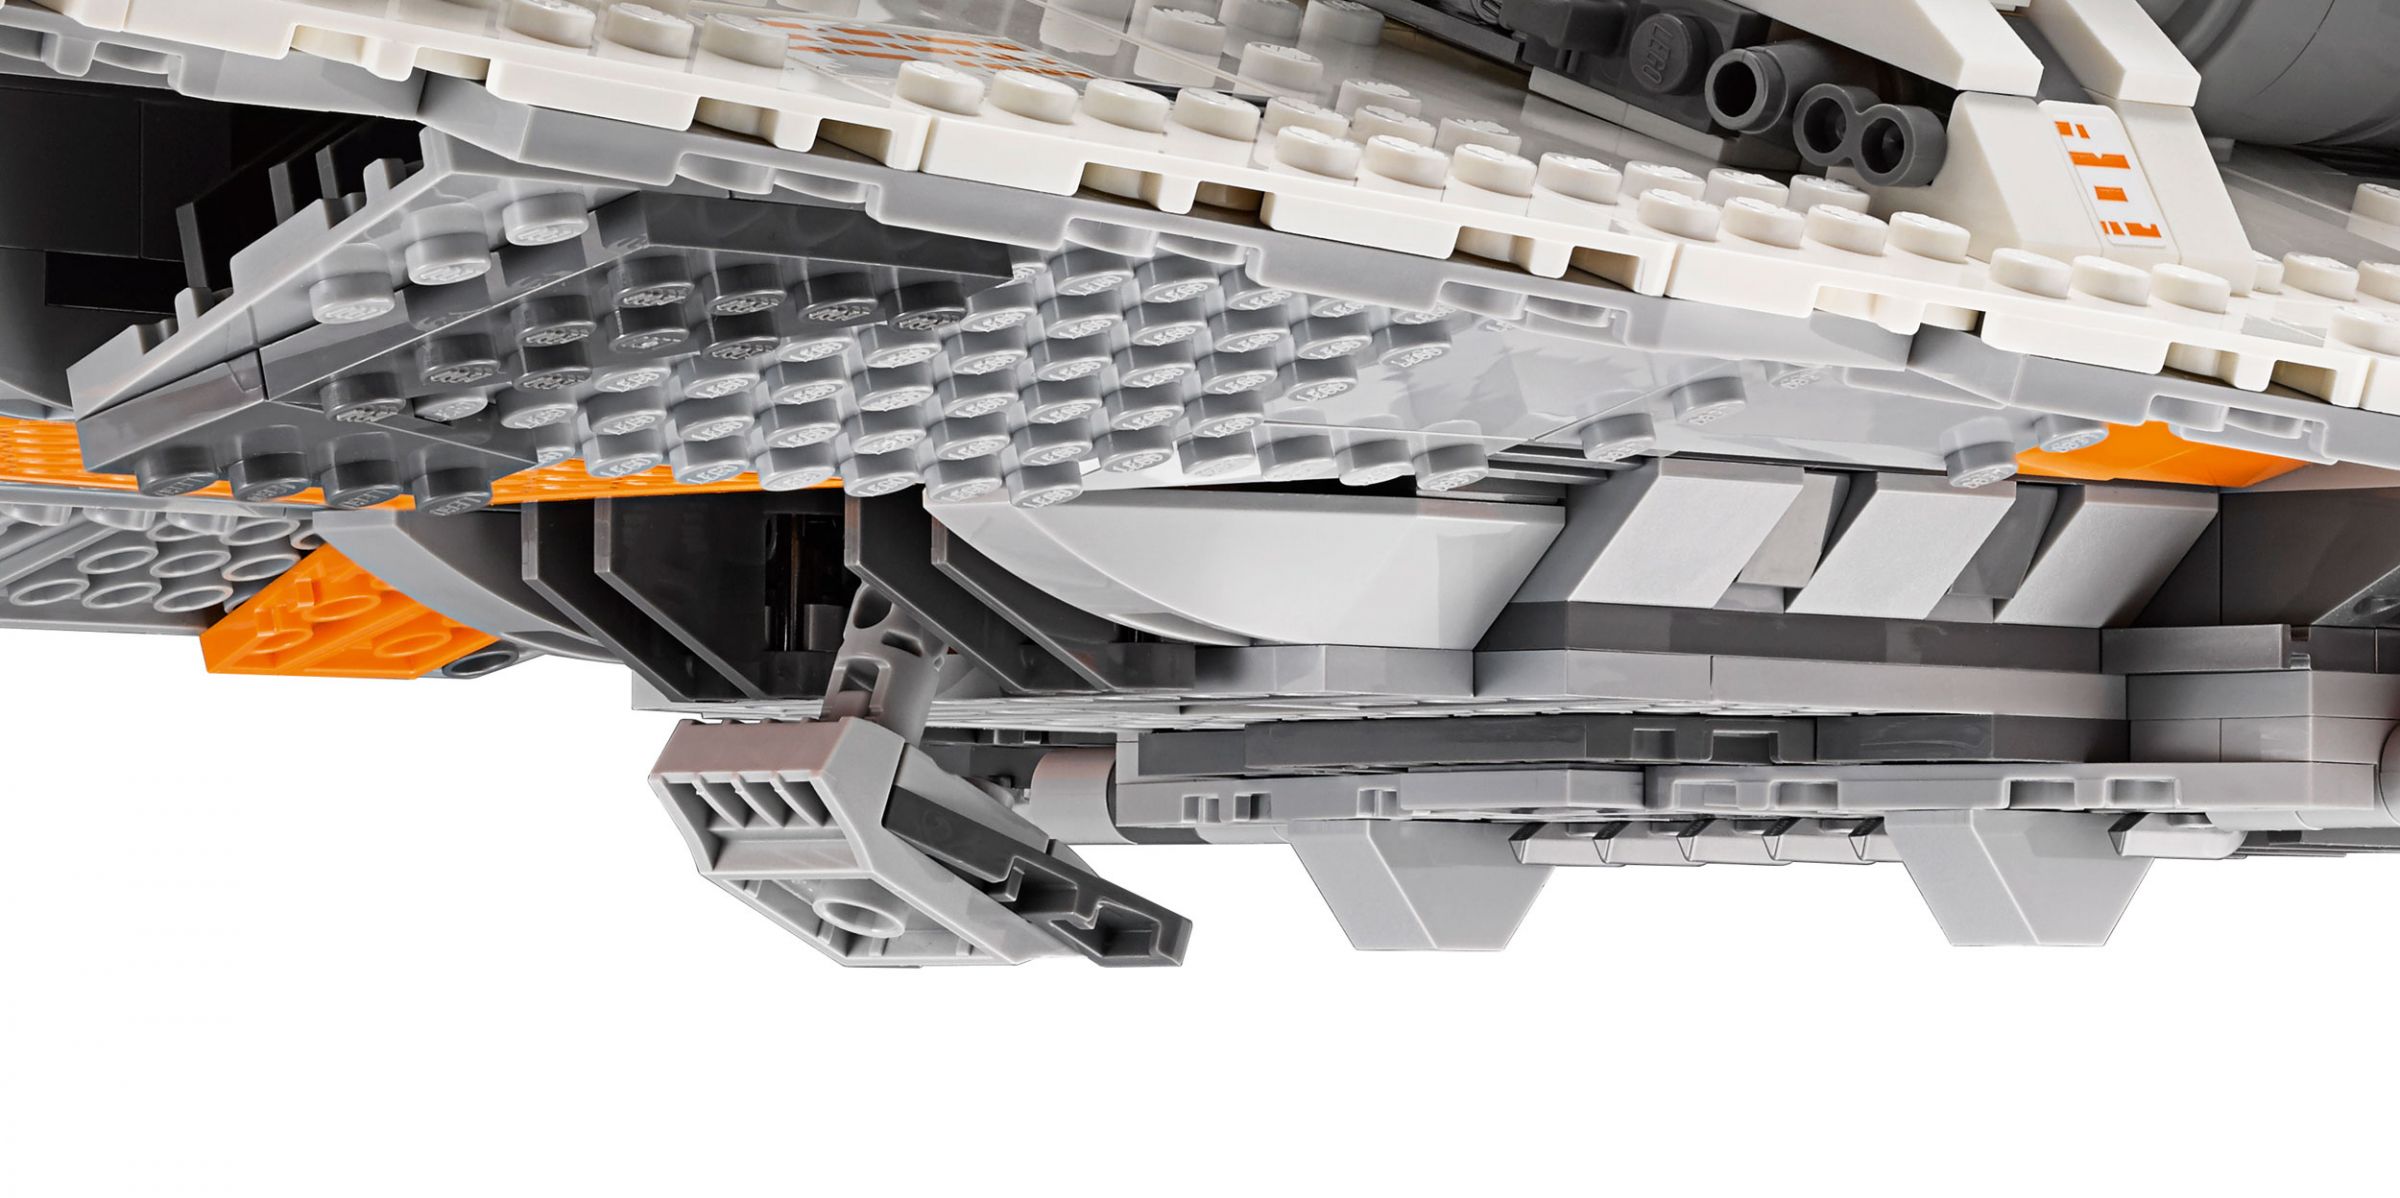 LEGO Star Wars 75144 Snowspeeder™ LEGO_Star_Wars_75144_Snowspeeder_UCS_img10.jpg